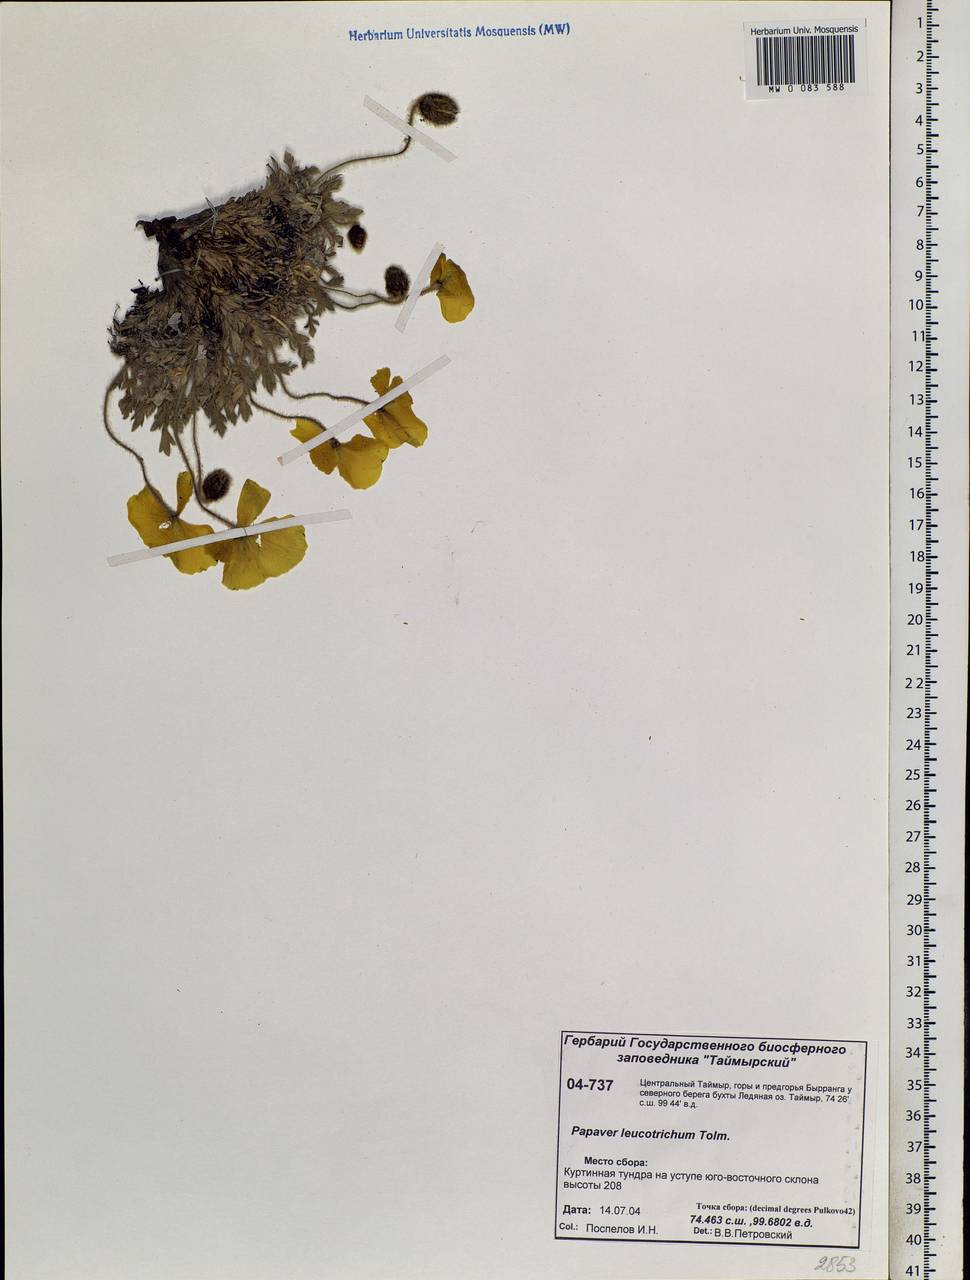 Papaver leucotrichum Tolm., Siberia, Central Siberia (S3) (Russia)